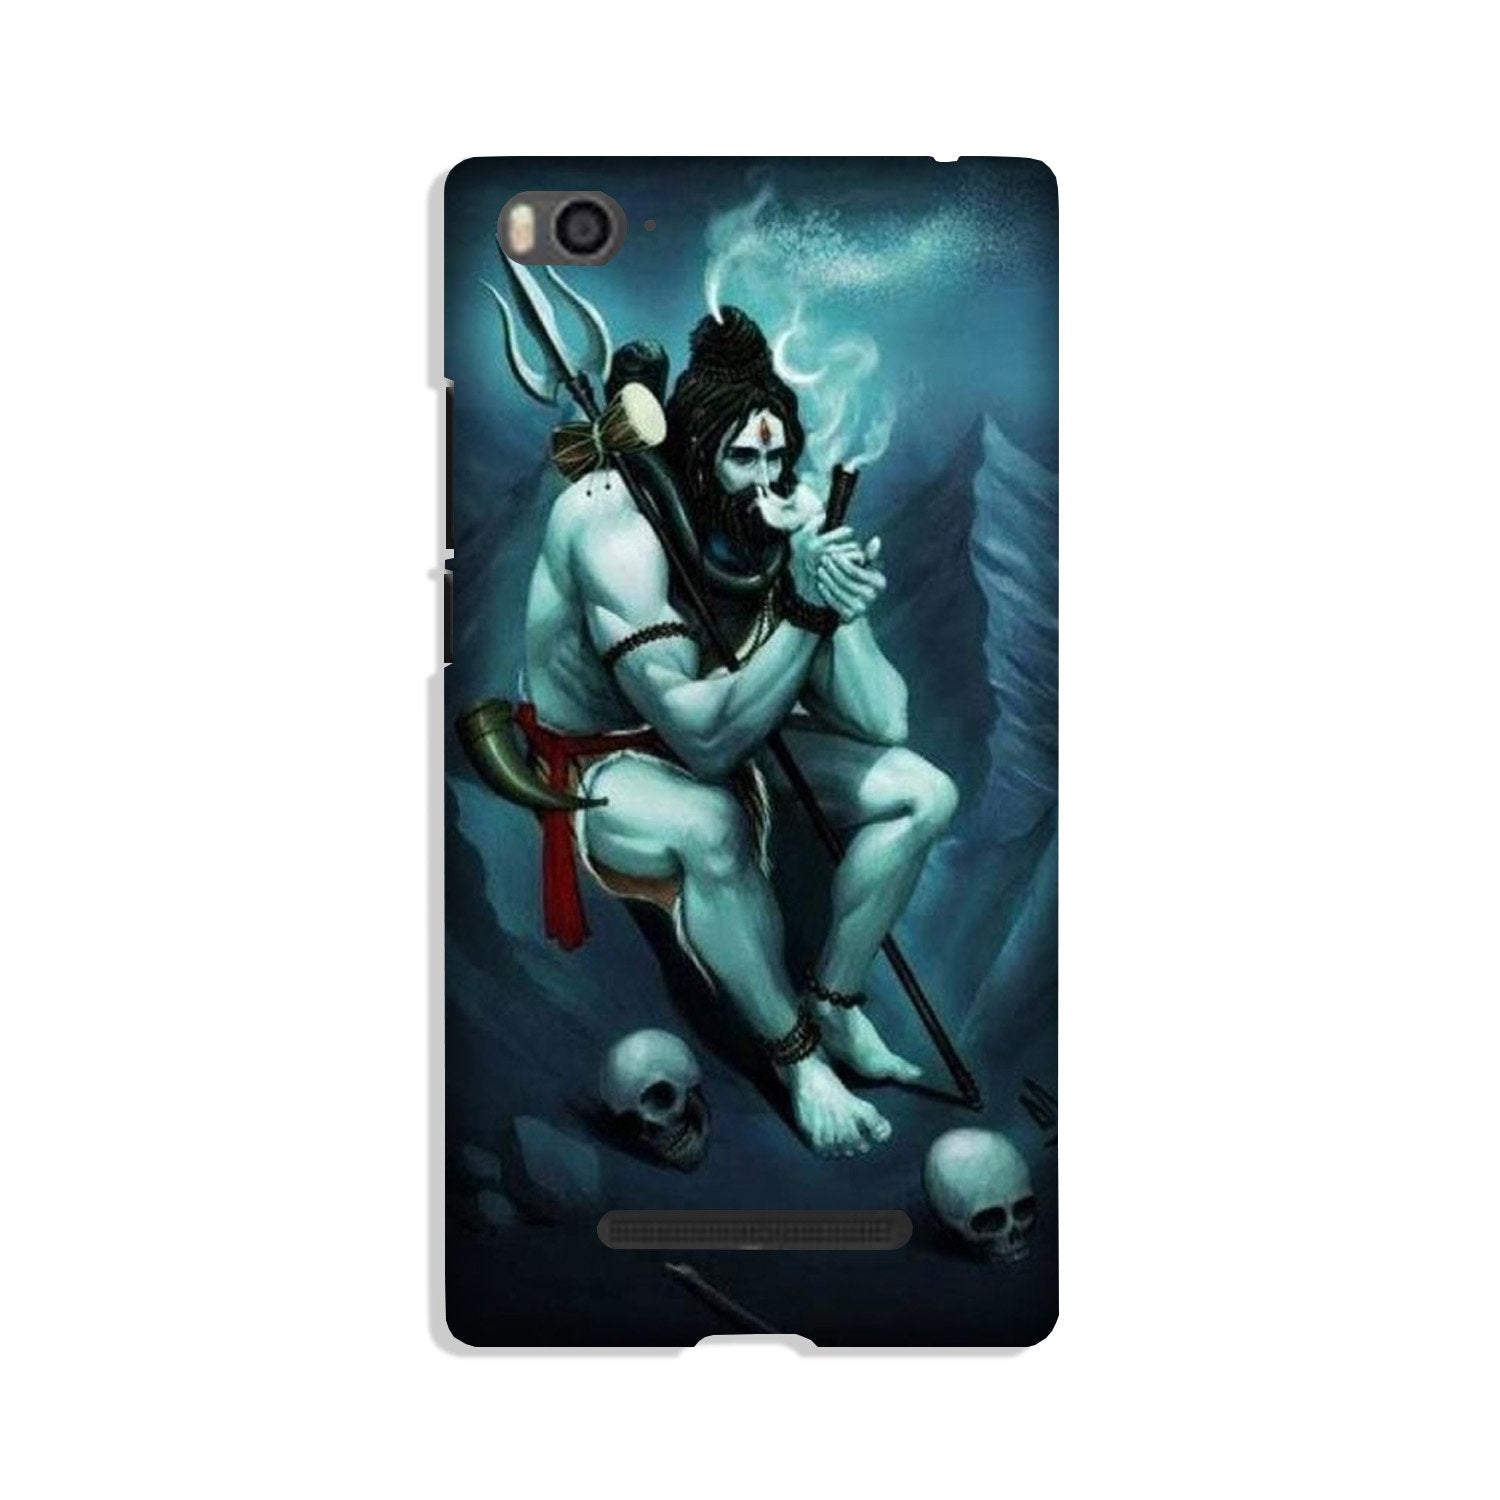 Lord Shiva Mahakal2 Case for Xiaomi Mi 4i